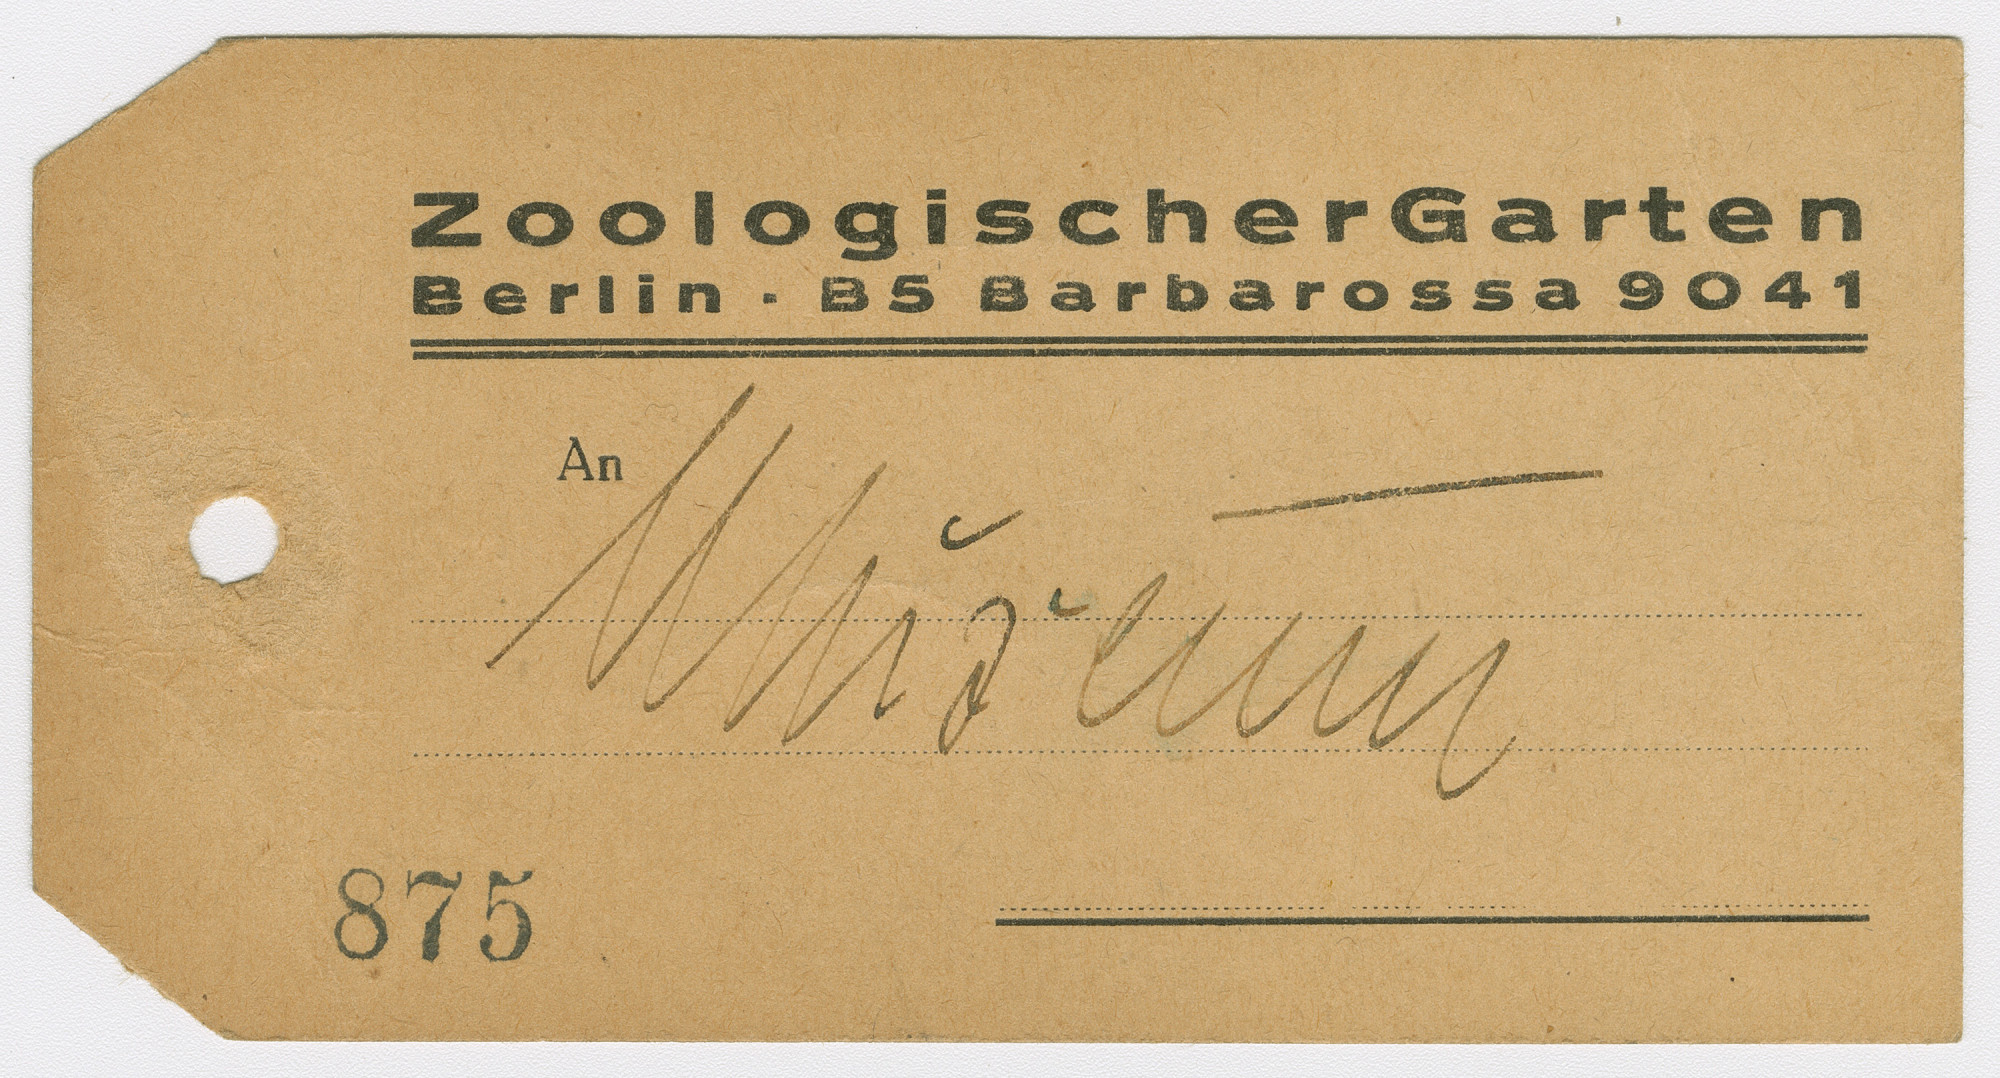 Gelochtes Papierschild mit Vordruck oben: Zoologischer Garten Berlin. B5 Barbarossa 9041. Gedruckte Nummer unten: 780. "An: Museum".